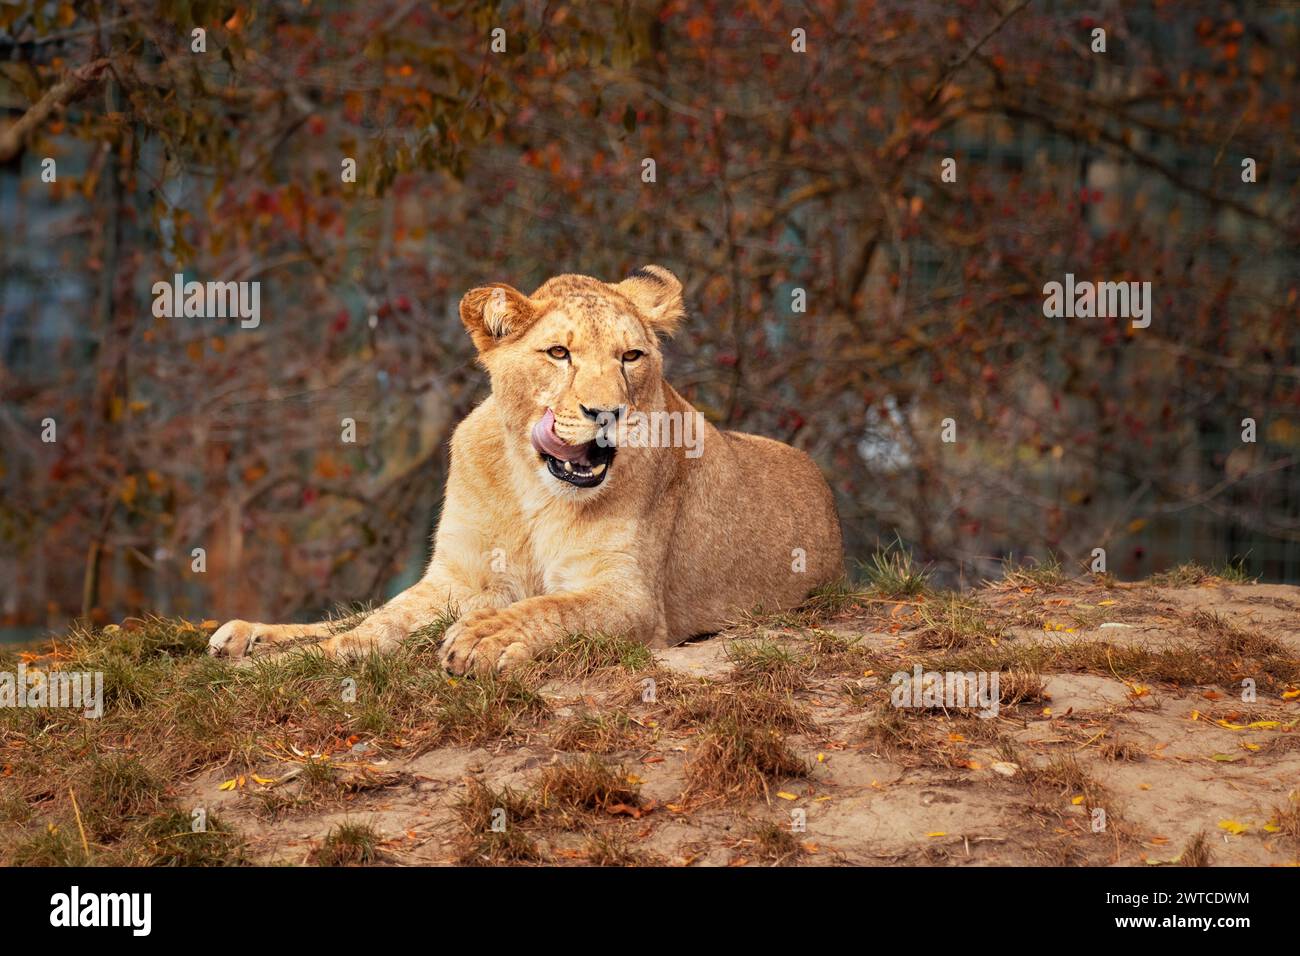 Löwe leckt seine Lippen, während er auf Gras liegt. Der berberlöwe, auch Nordafrikanischer Löwe, Atlas-Löwe und ägyptischer Löwe genannt, ist inzwischen ausgestorben. Stockfoto